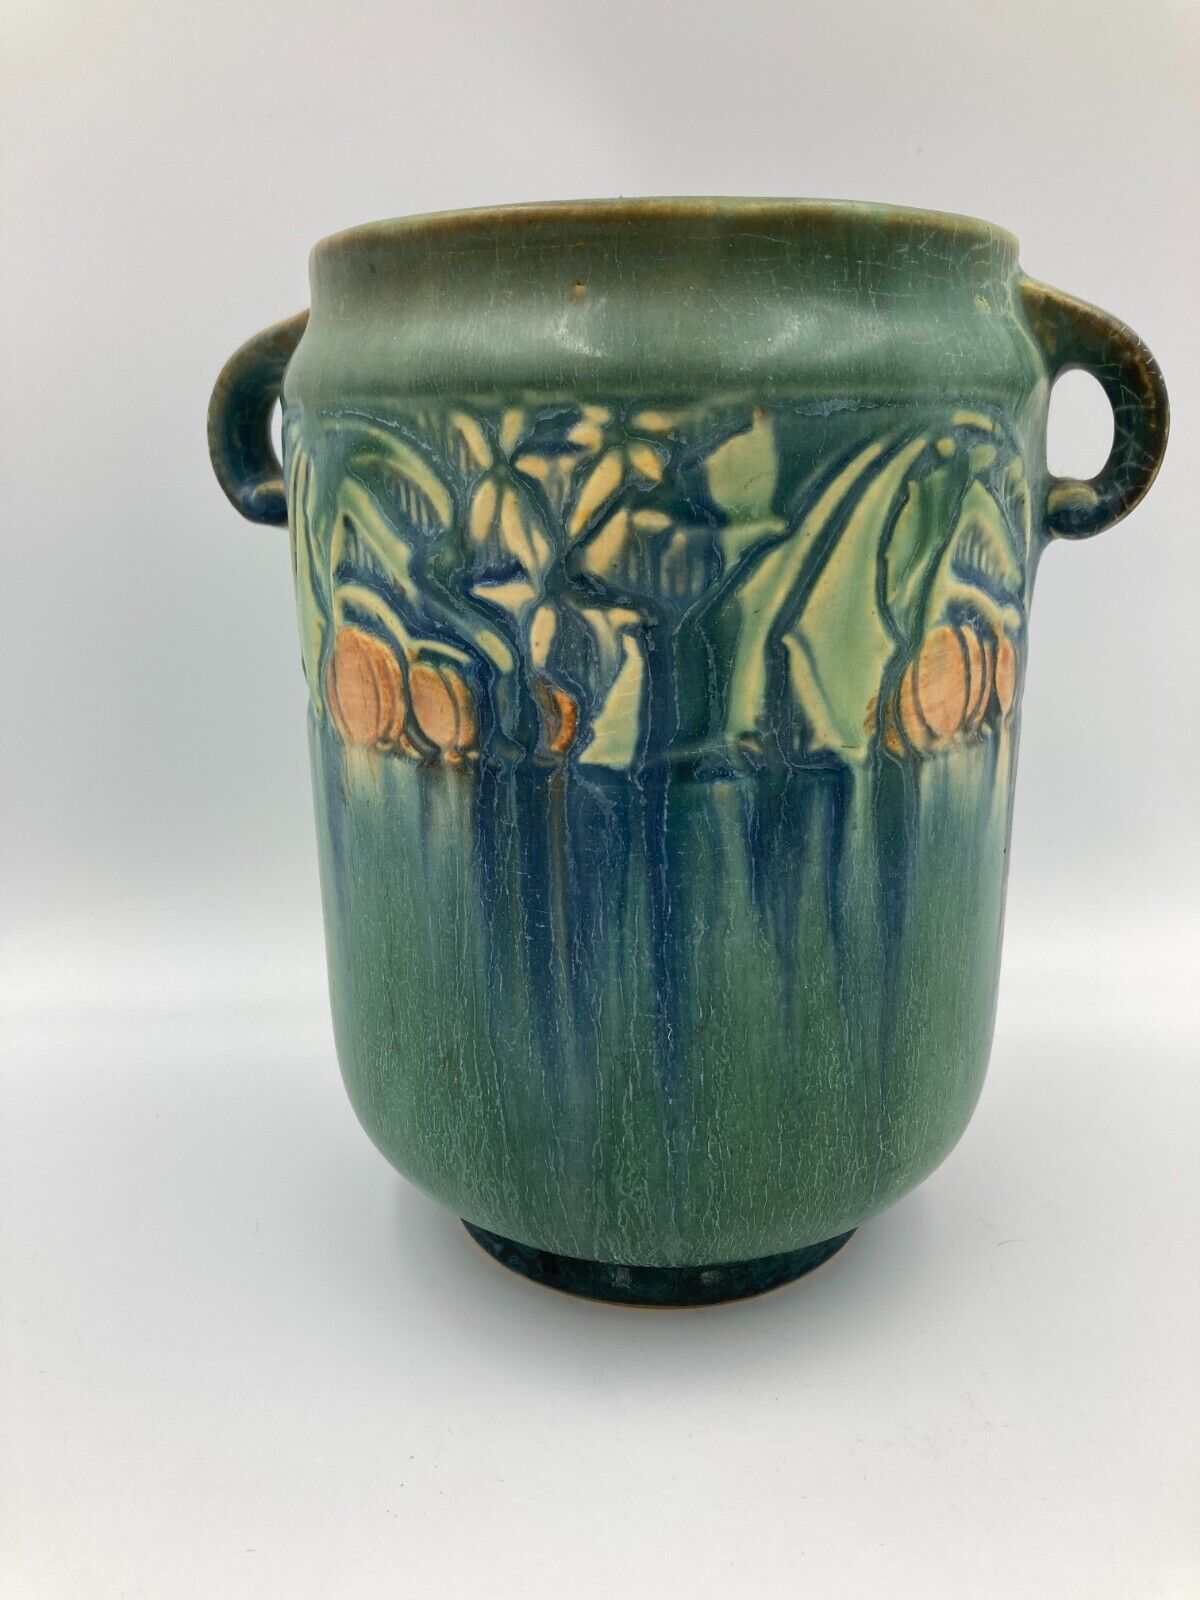 roseville baneda green handled vase - vg cond from collector estate & 